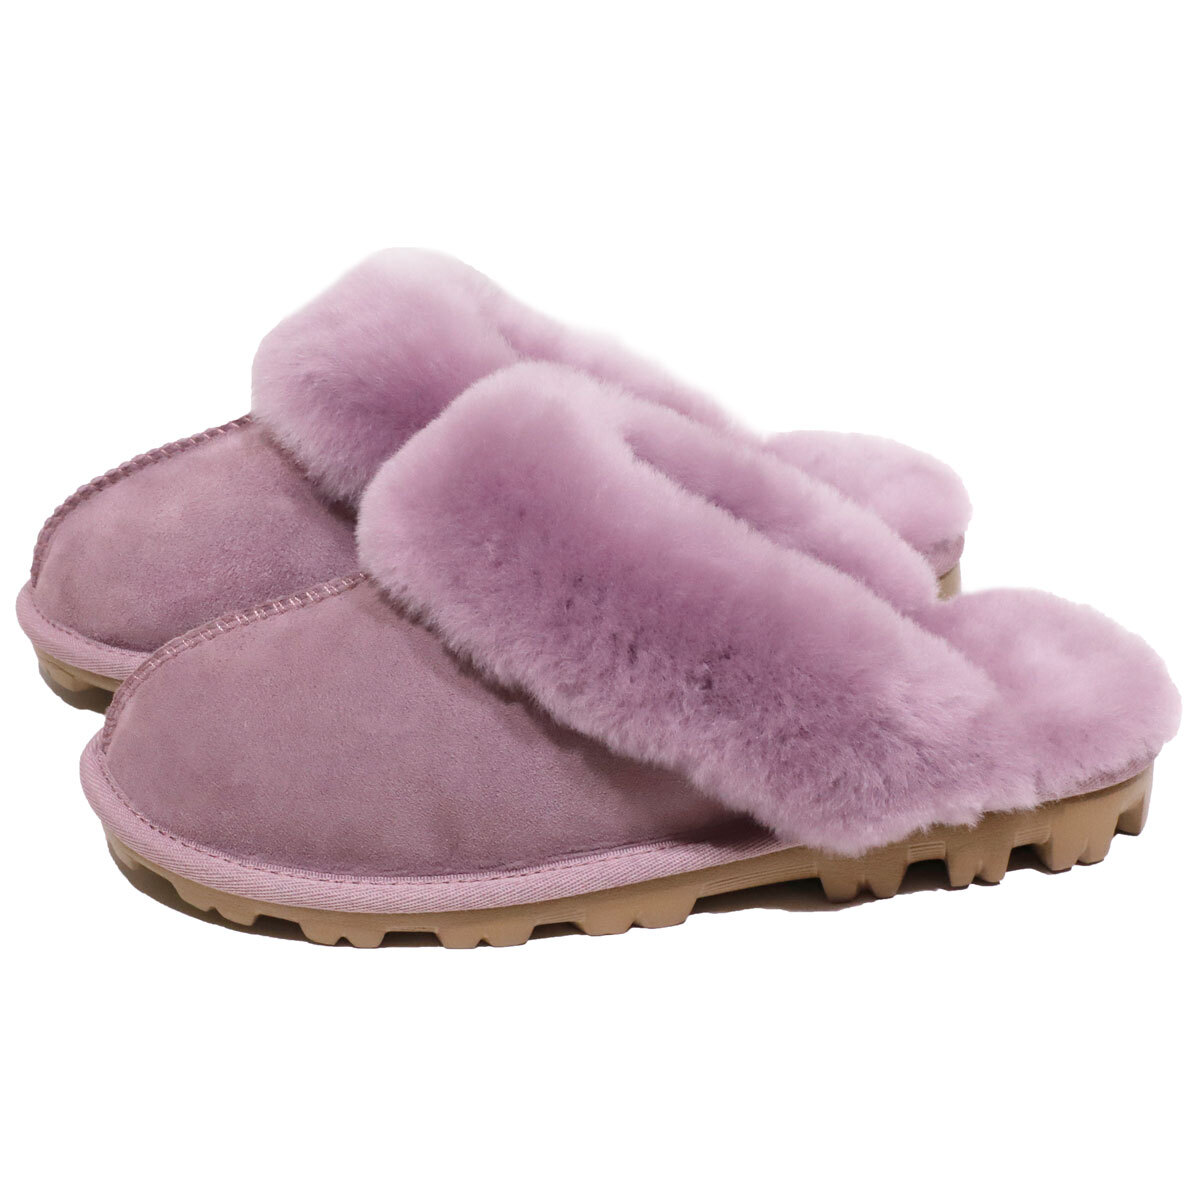 kirkland sheepskin slippers